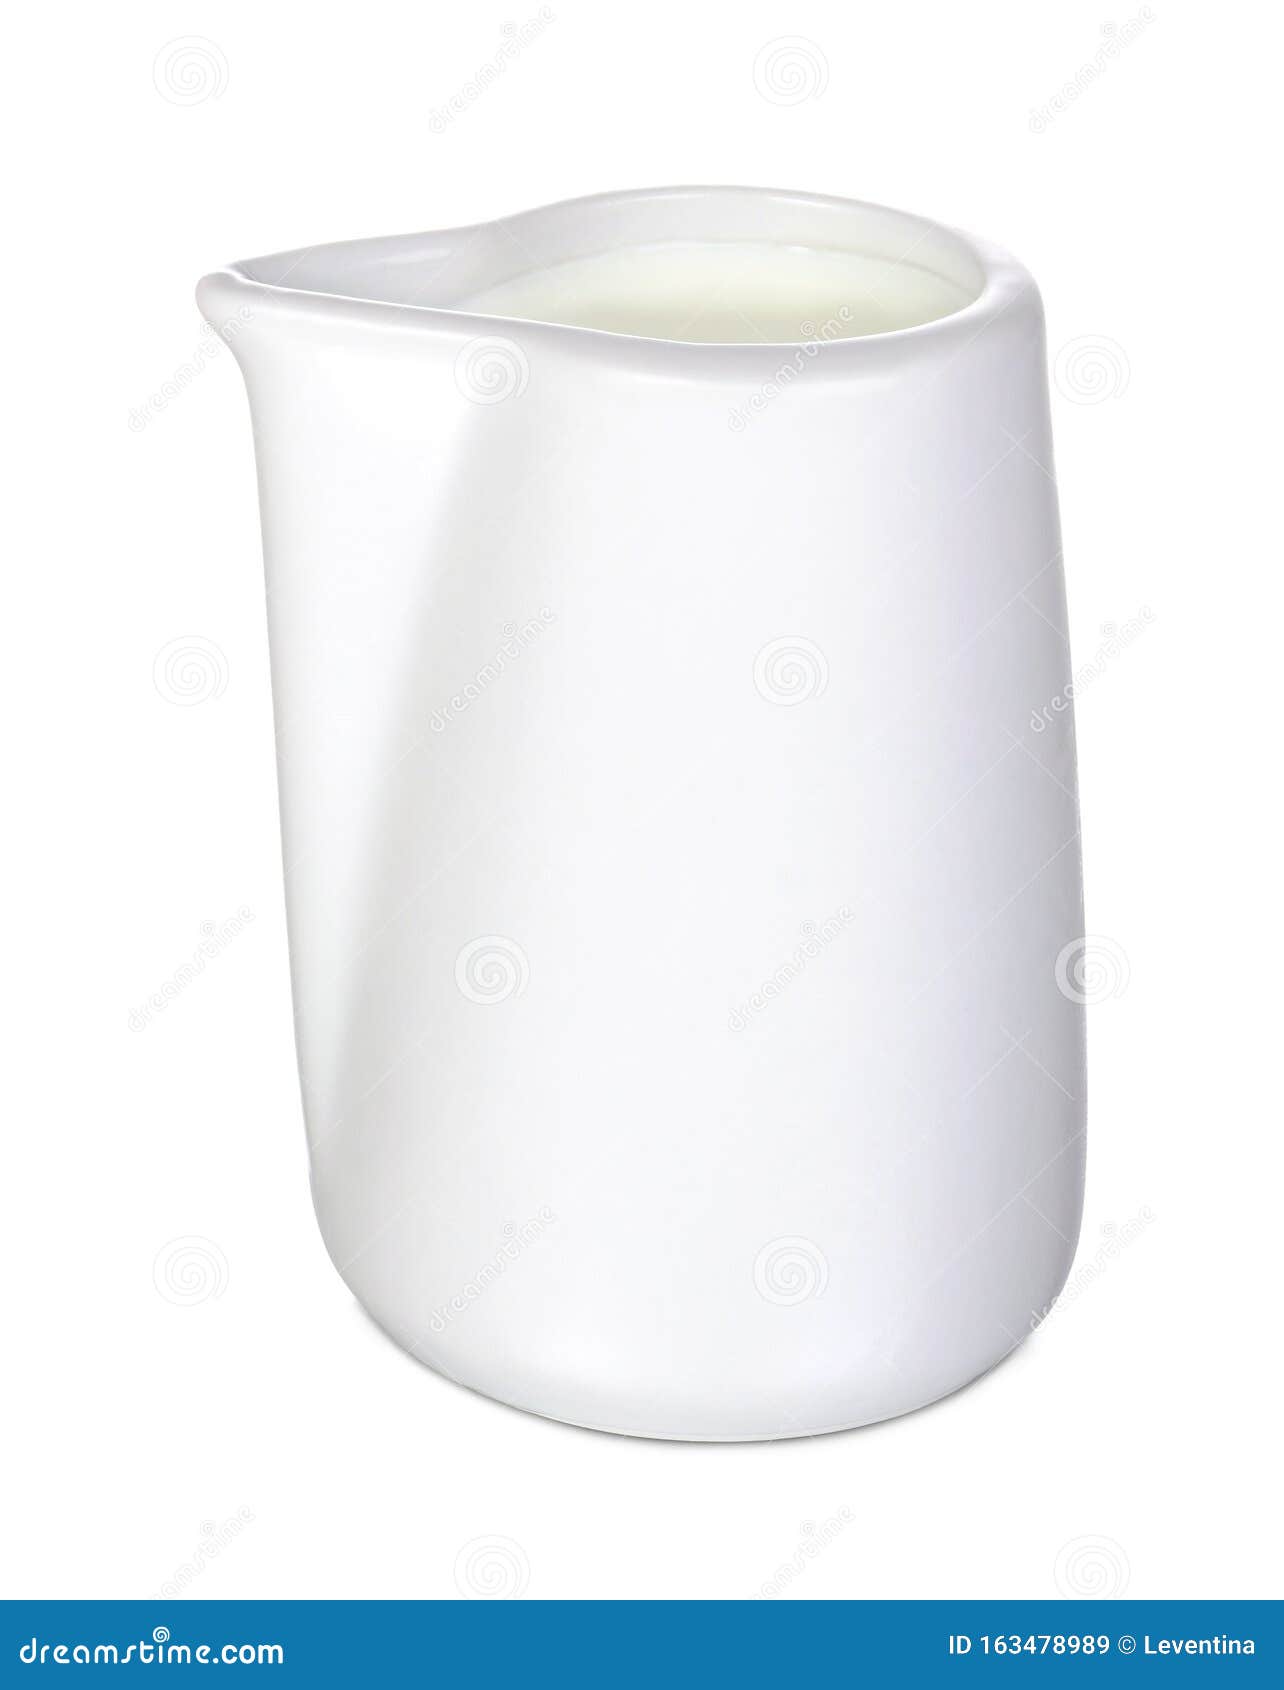 white ceramic saucier